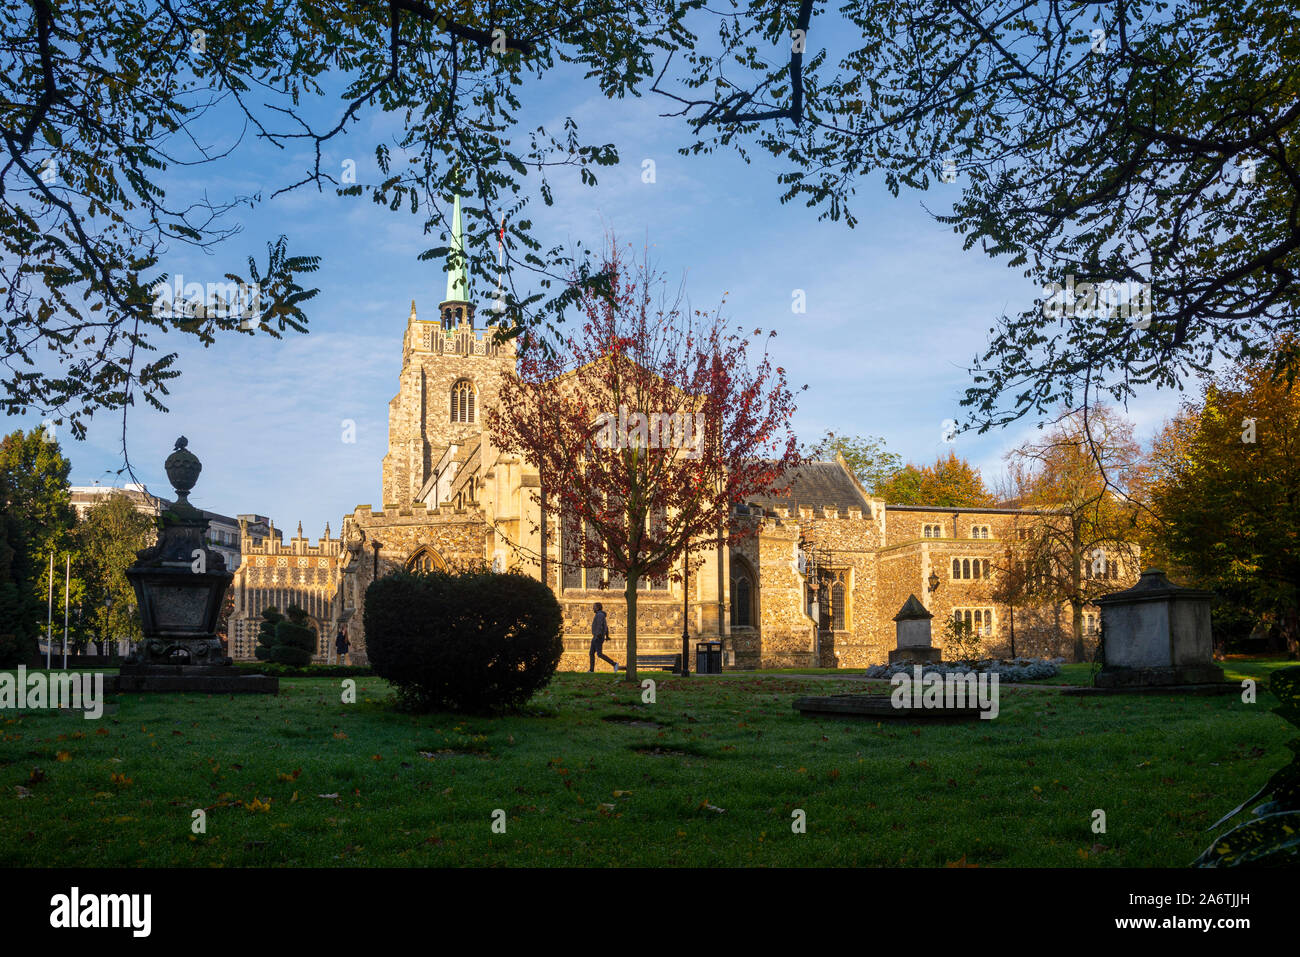 Die Kathedrale von Chelmsford, Essex, Großbritannien auf einem hellen, kalten Herbst morgen mit Frost Tau auf dem Gras. Bäume und Sträucher im Gelände. Kathedrale Kirche Stockfoto